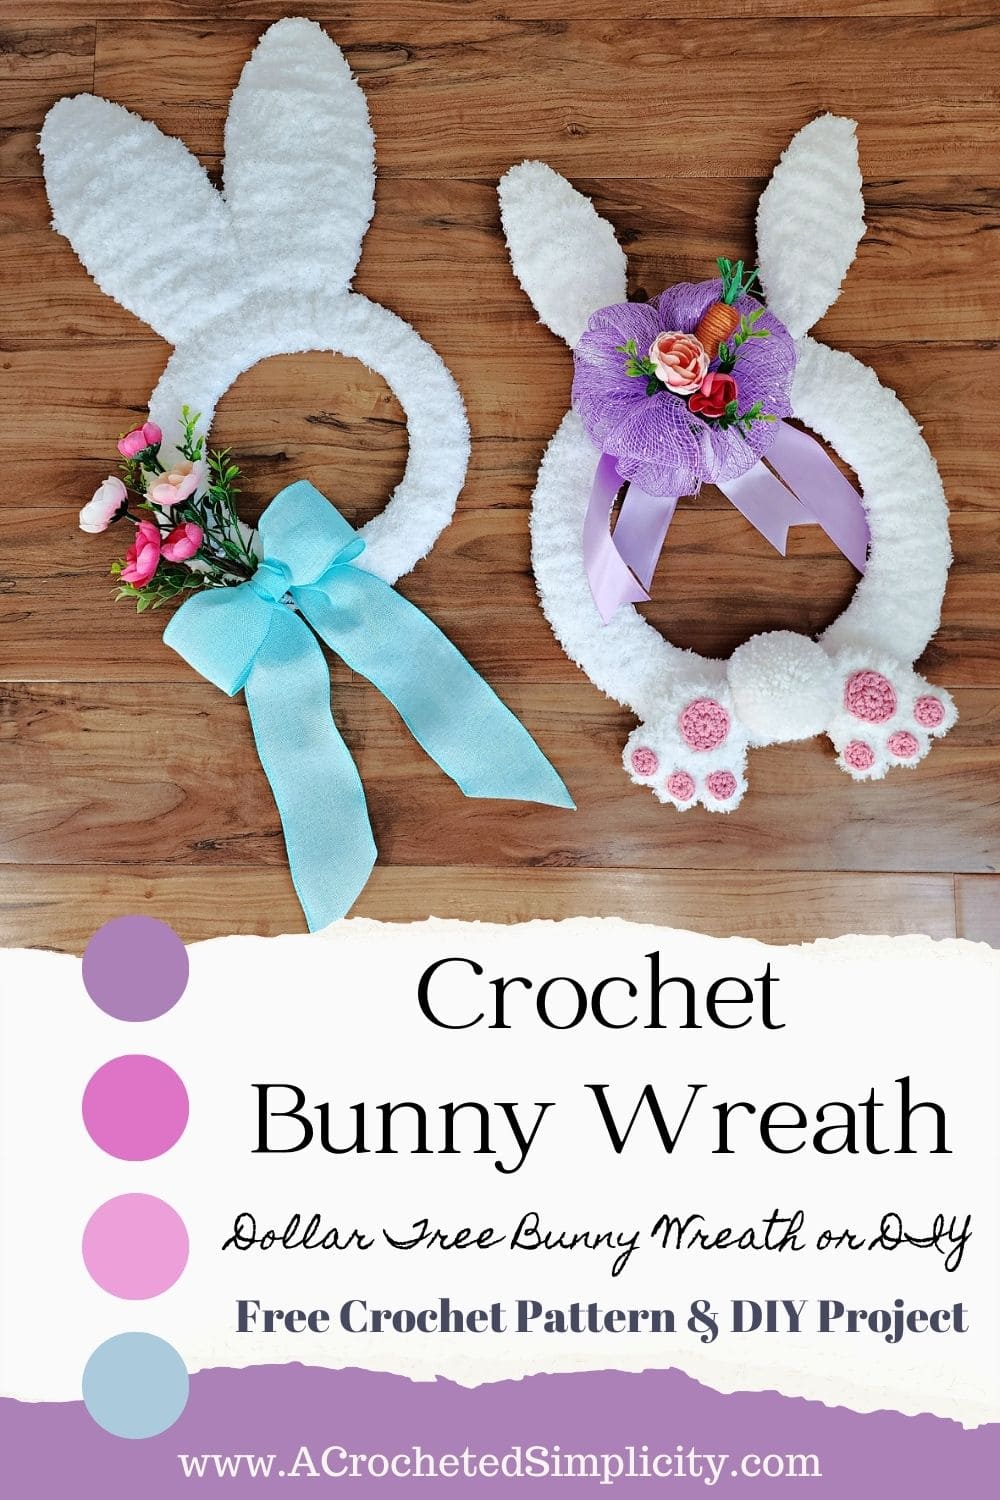 Two crochet bunny wreaths laying on wood floor.